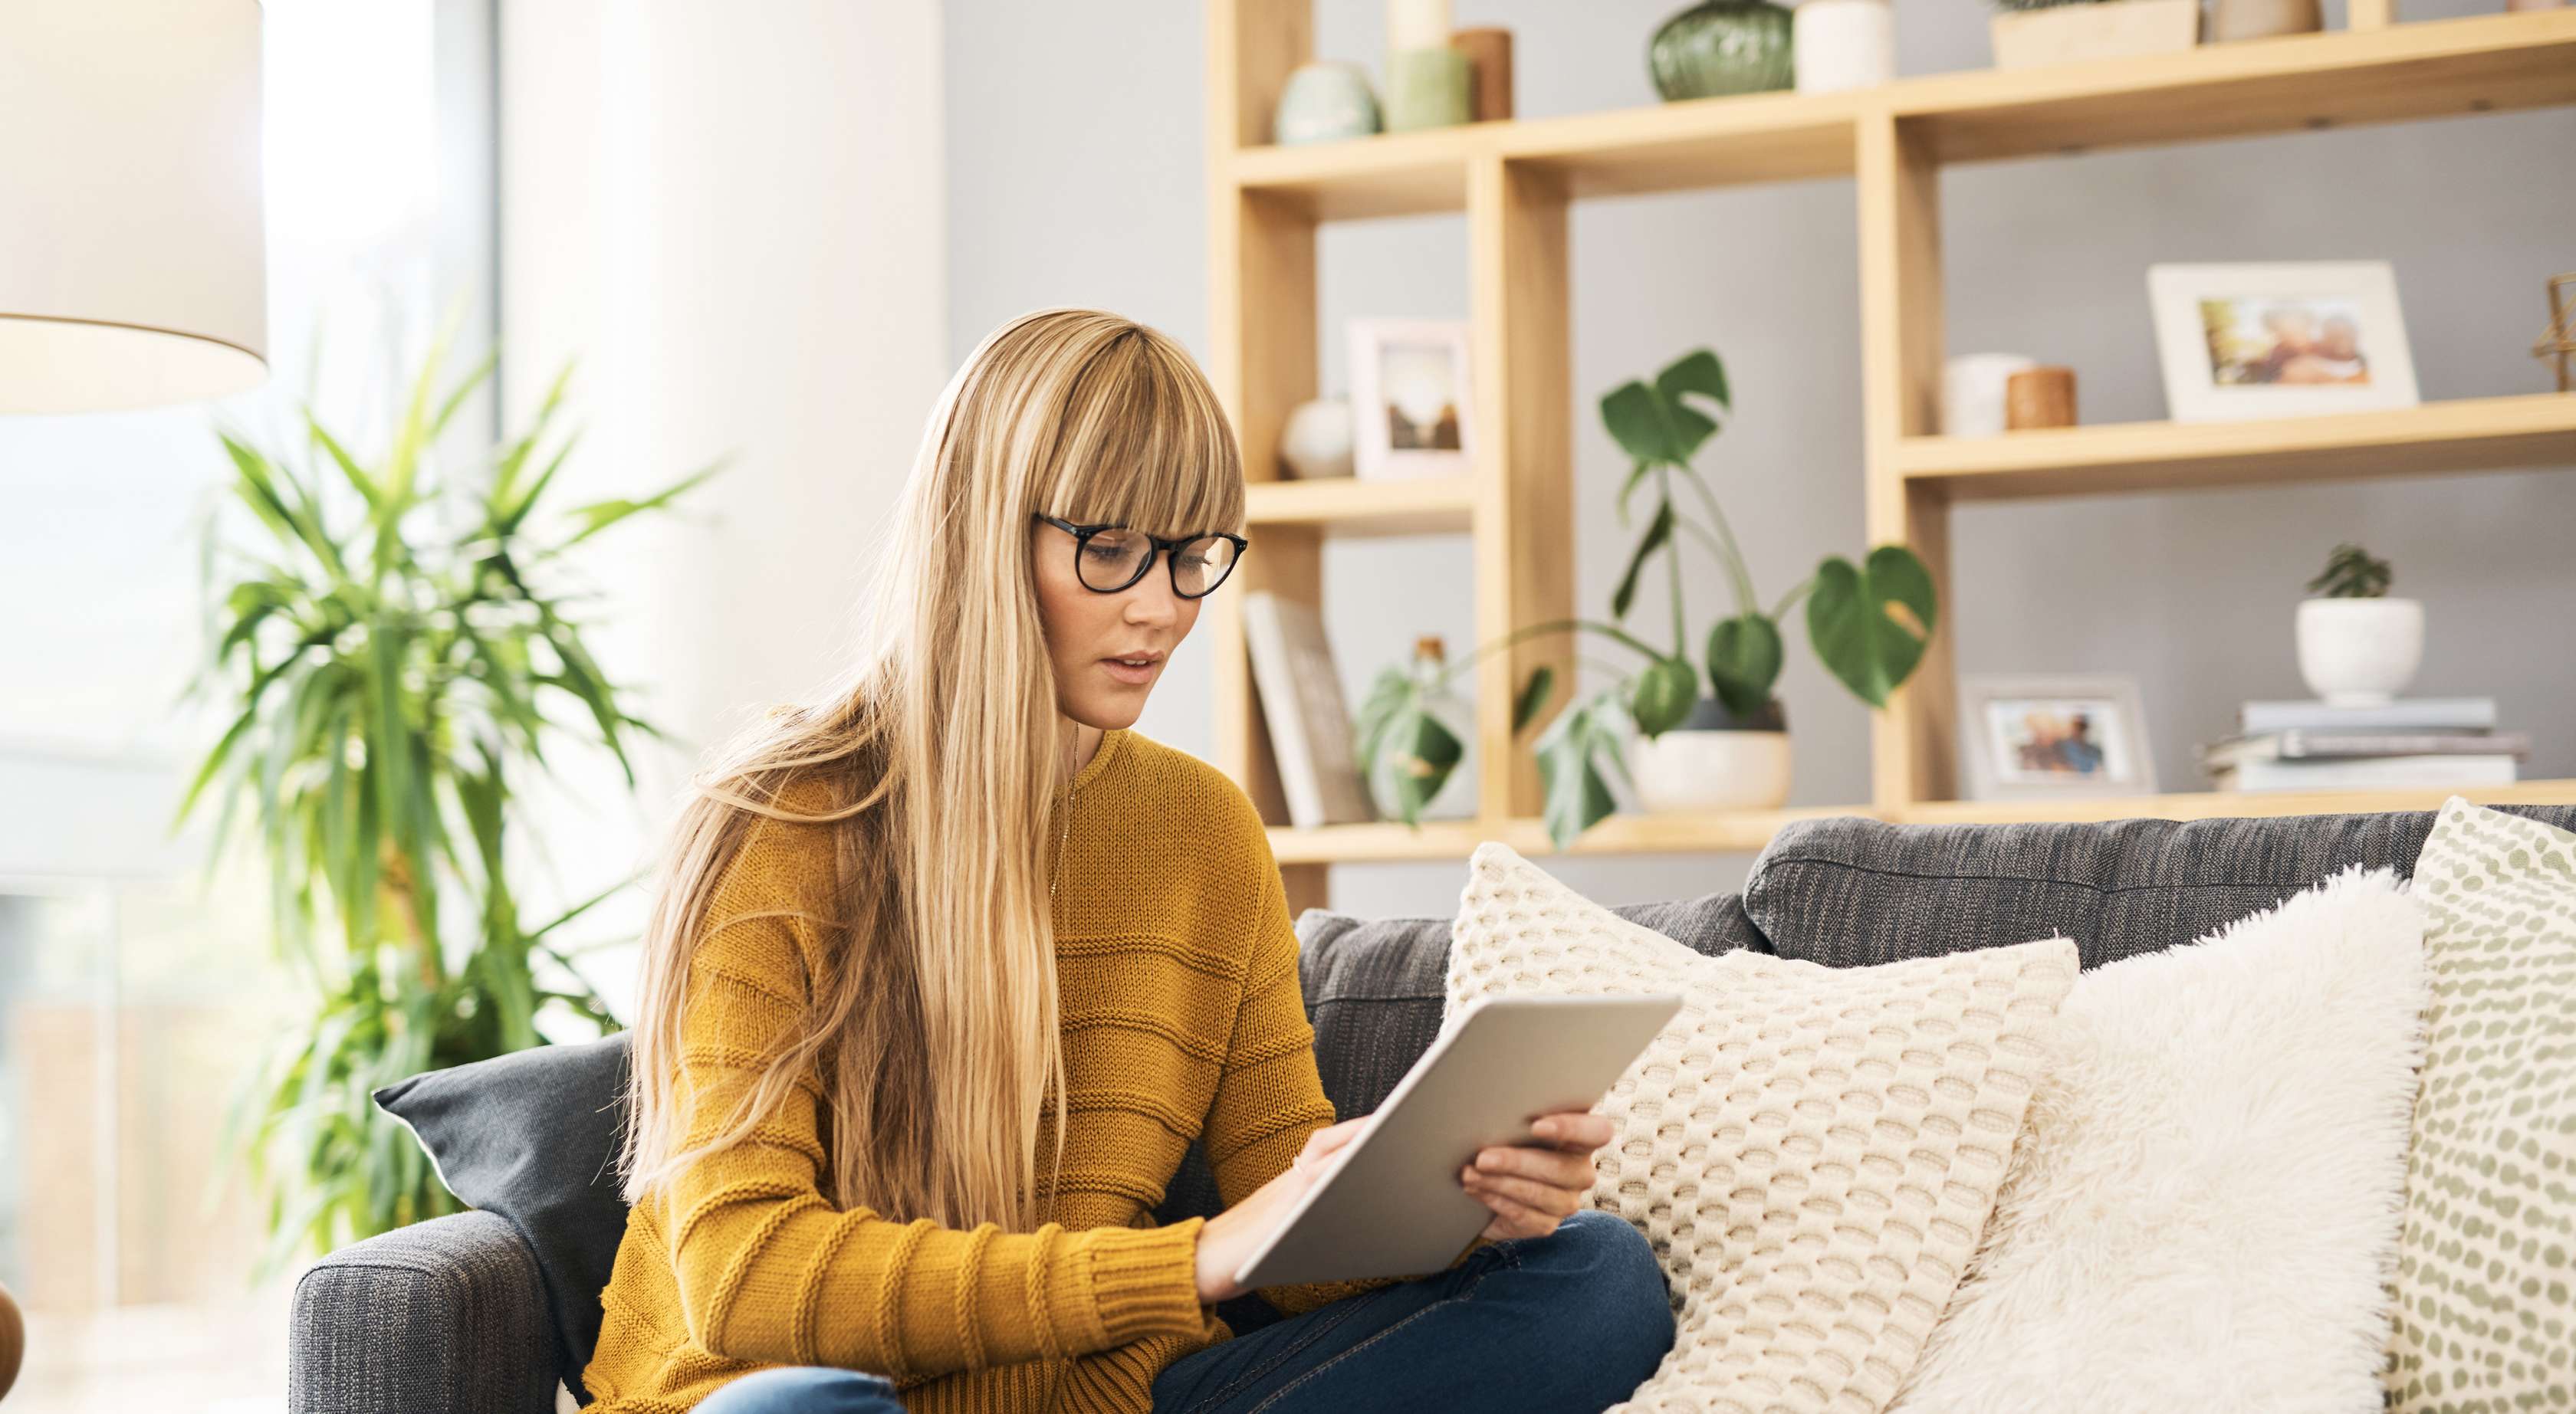 Junge blonde Frau im gelben Pullover sitzt auf Couch und schaut in ihr Tablet